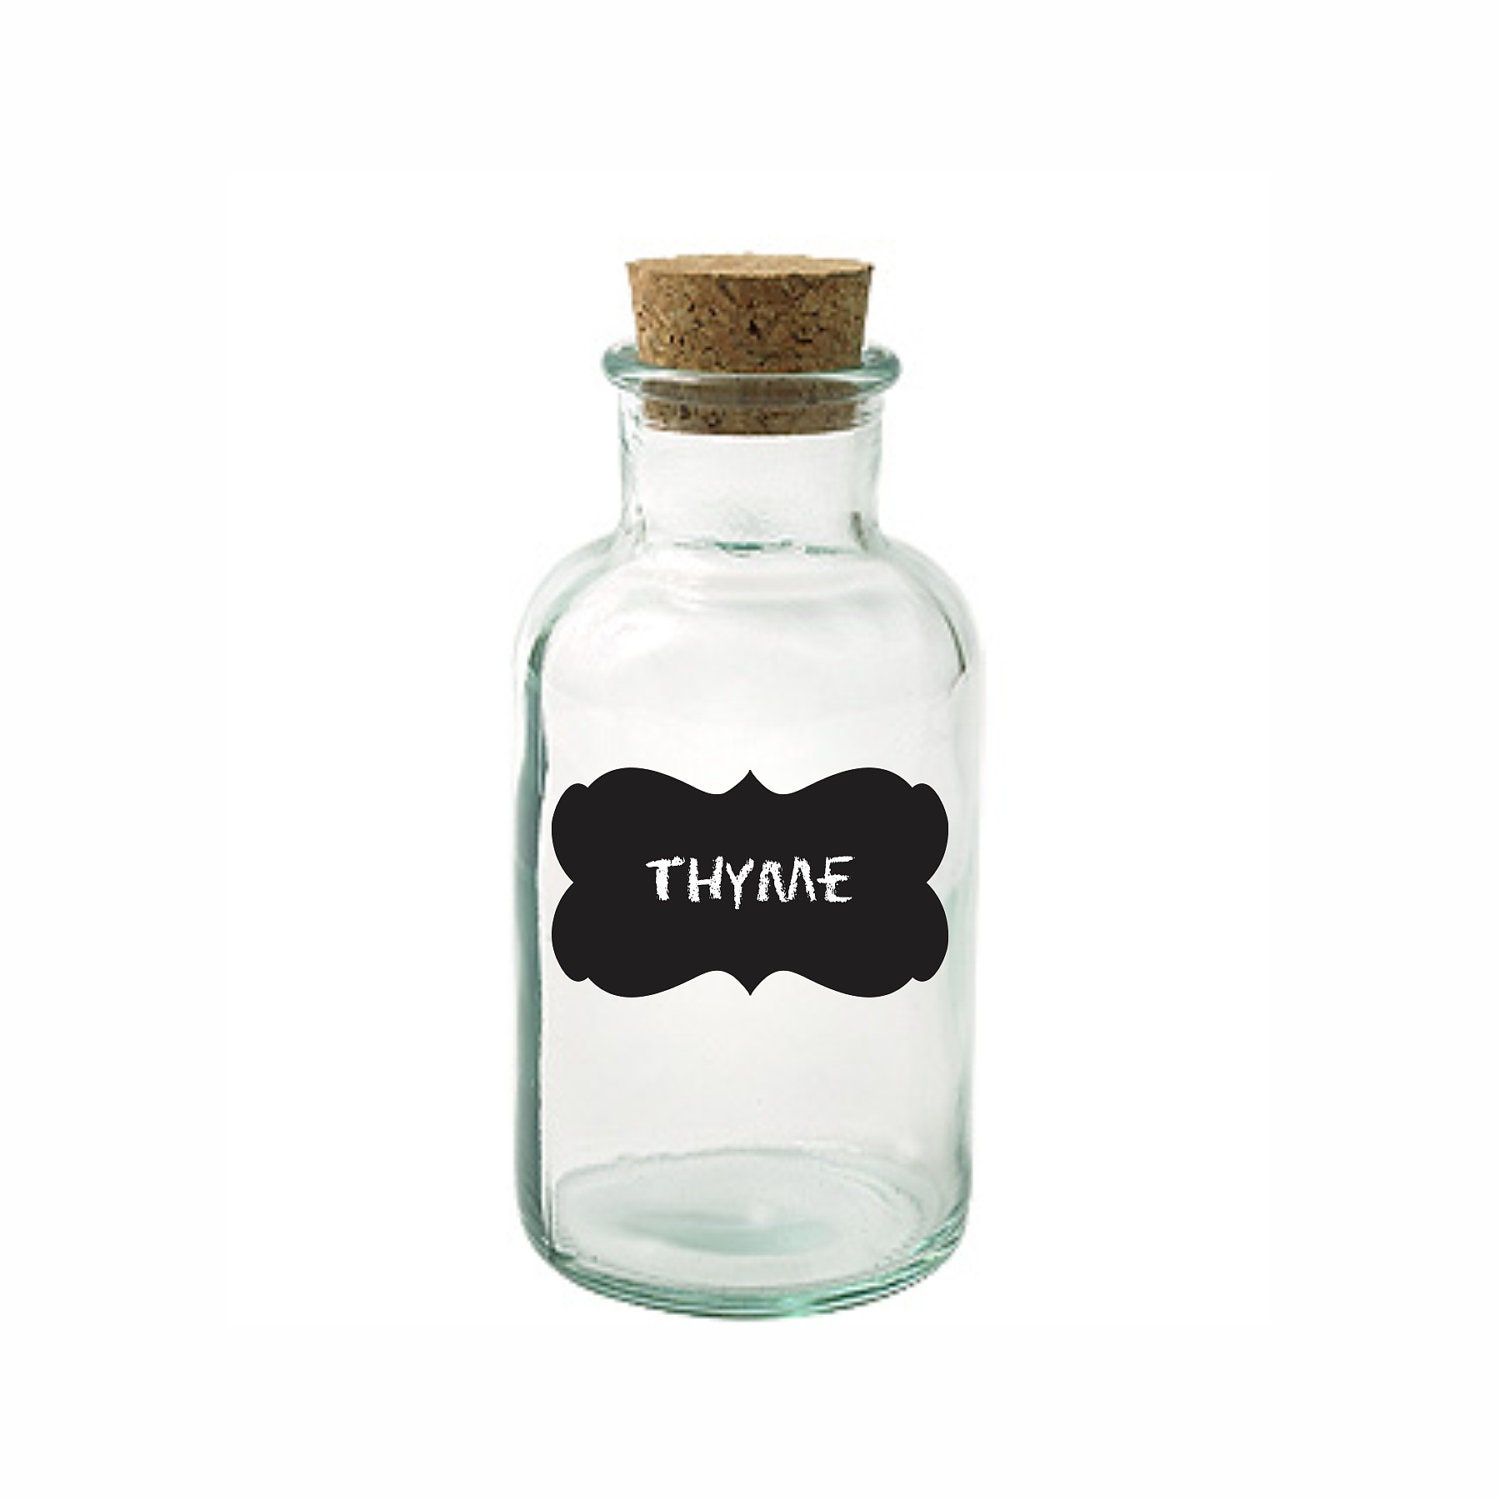 Spice Jar Labels - Scroll Frame Black & White - Fancy Scroll Labels - Chalkboard Stickers - AllisStudio